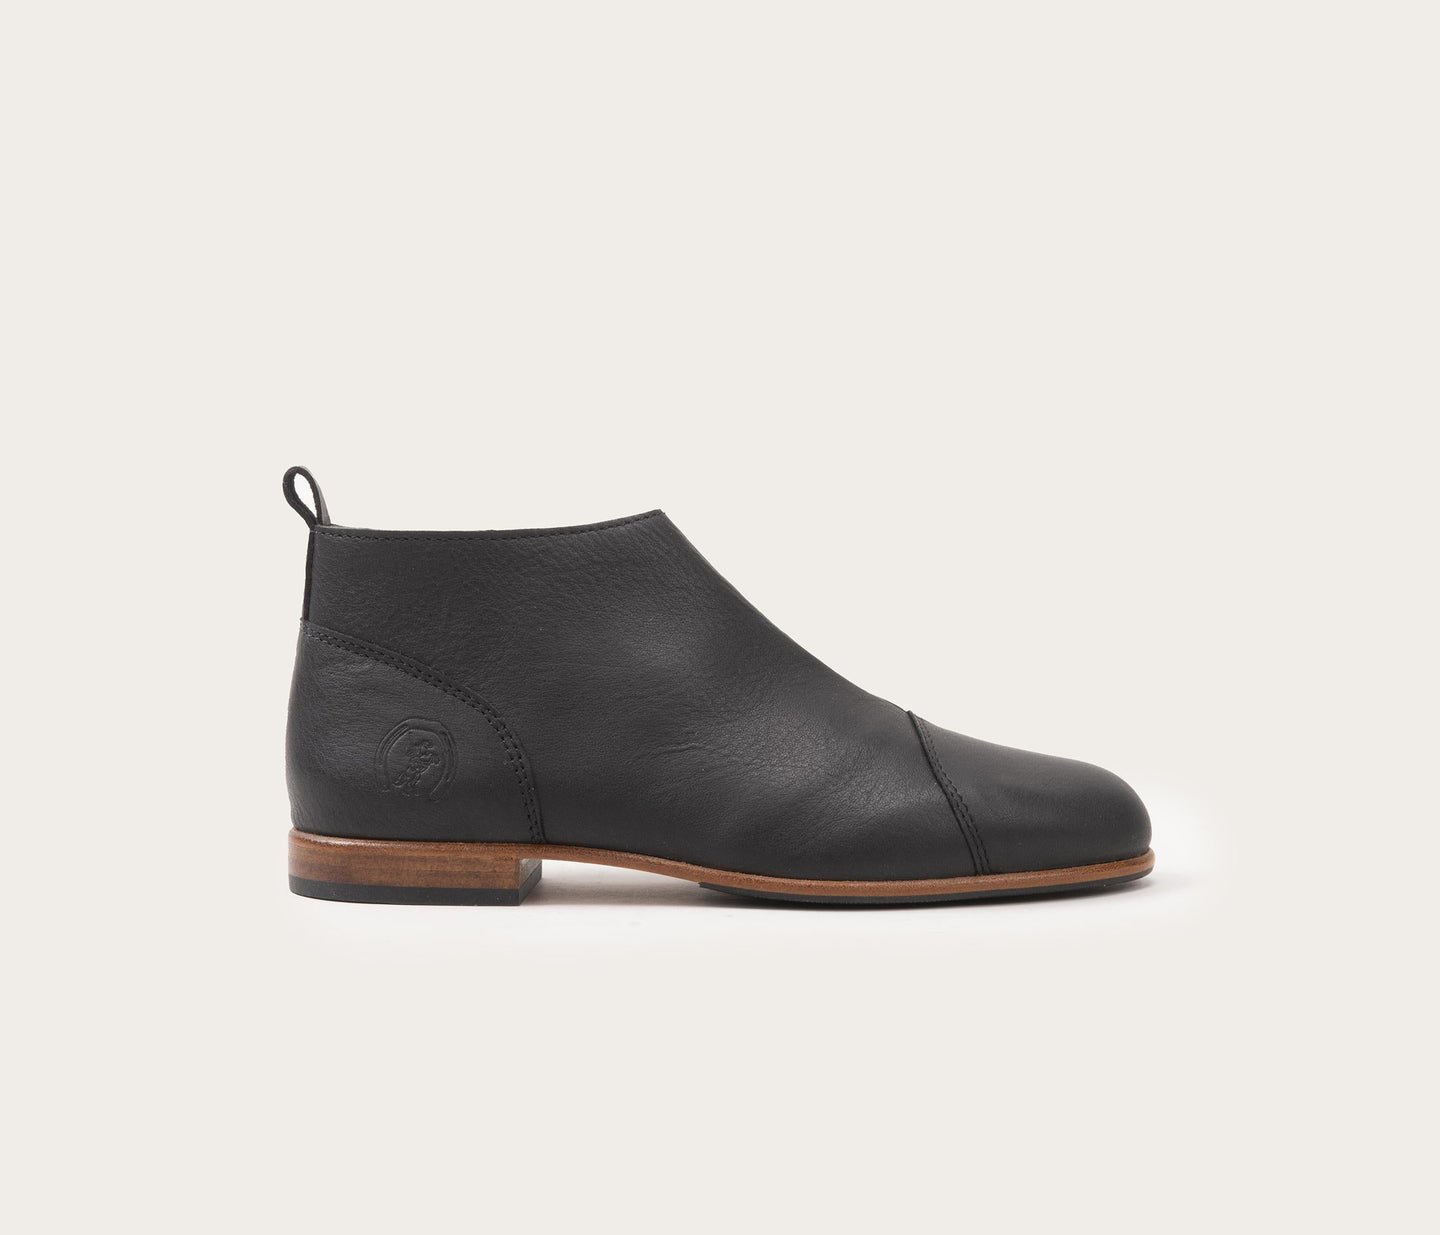 chaussure en cuir souple noir - chaussure en cuir français - La botte gardiane chaussure en cuir - chaussure en cuir la botte gardiane - chaussure en cuir souple noir femme - chaussure noire à zip - chaussure noir en cuir à zip - chaussure noire pour femme avec un zip - chaussure en cuir zippée, chaussure noire femme 42